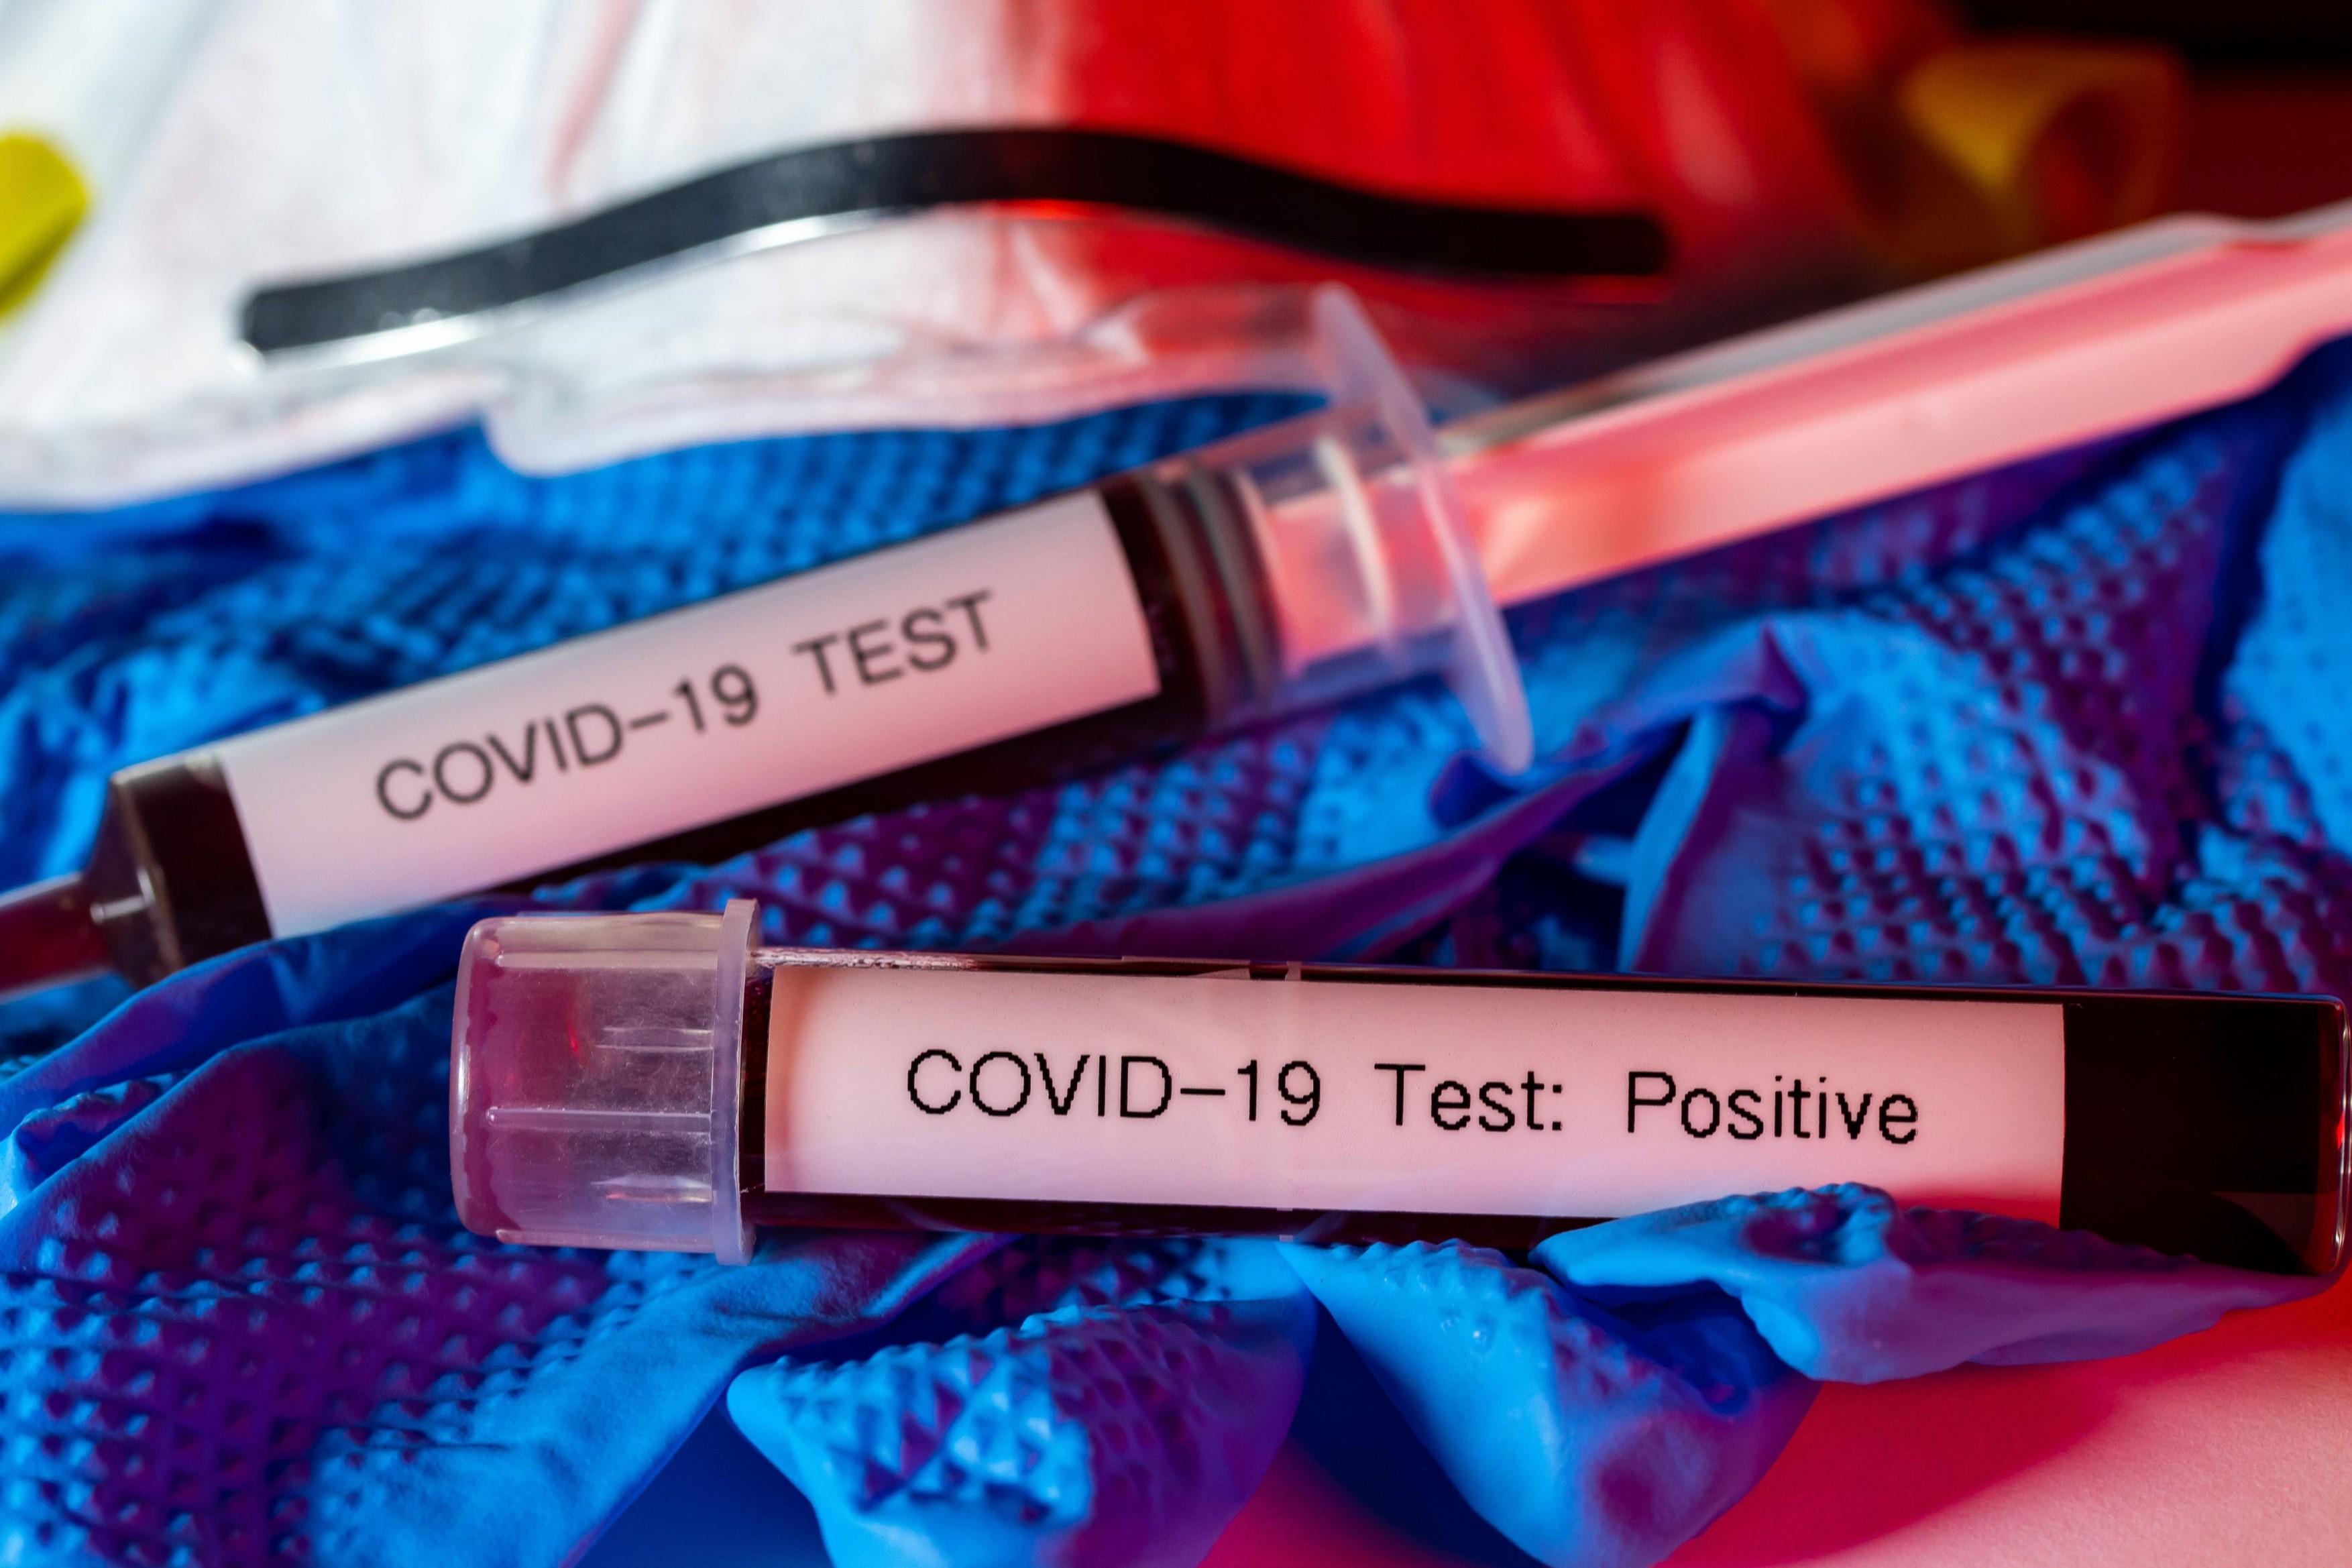 S-au schimbat regulile! Cine va fi testat, de acum încolo, de coronavirus? Ce simptome de COVID-19 vor căuta medicii?